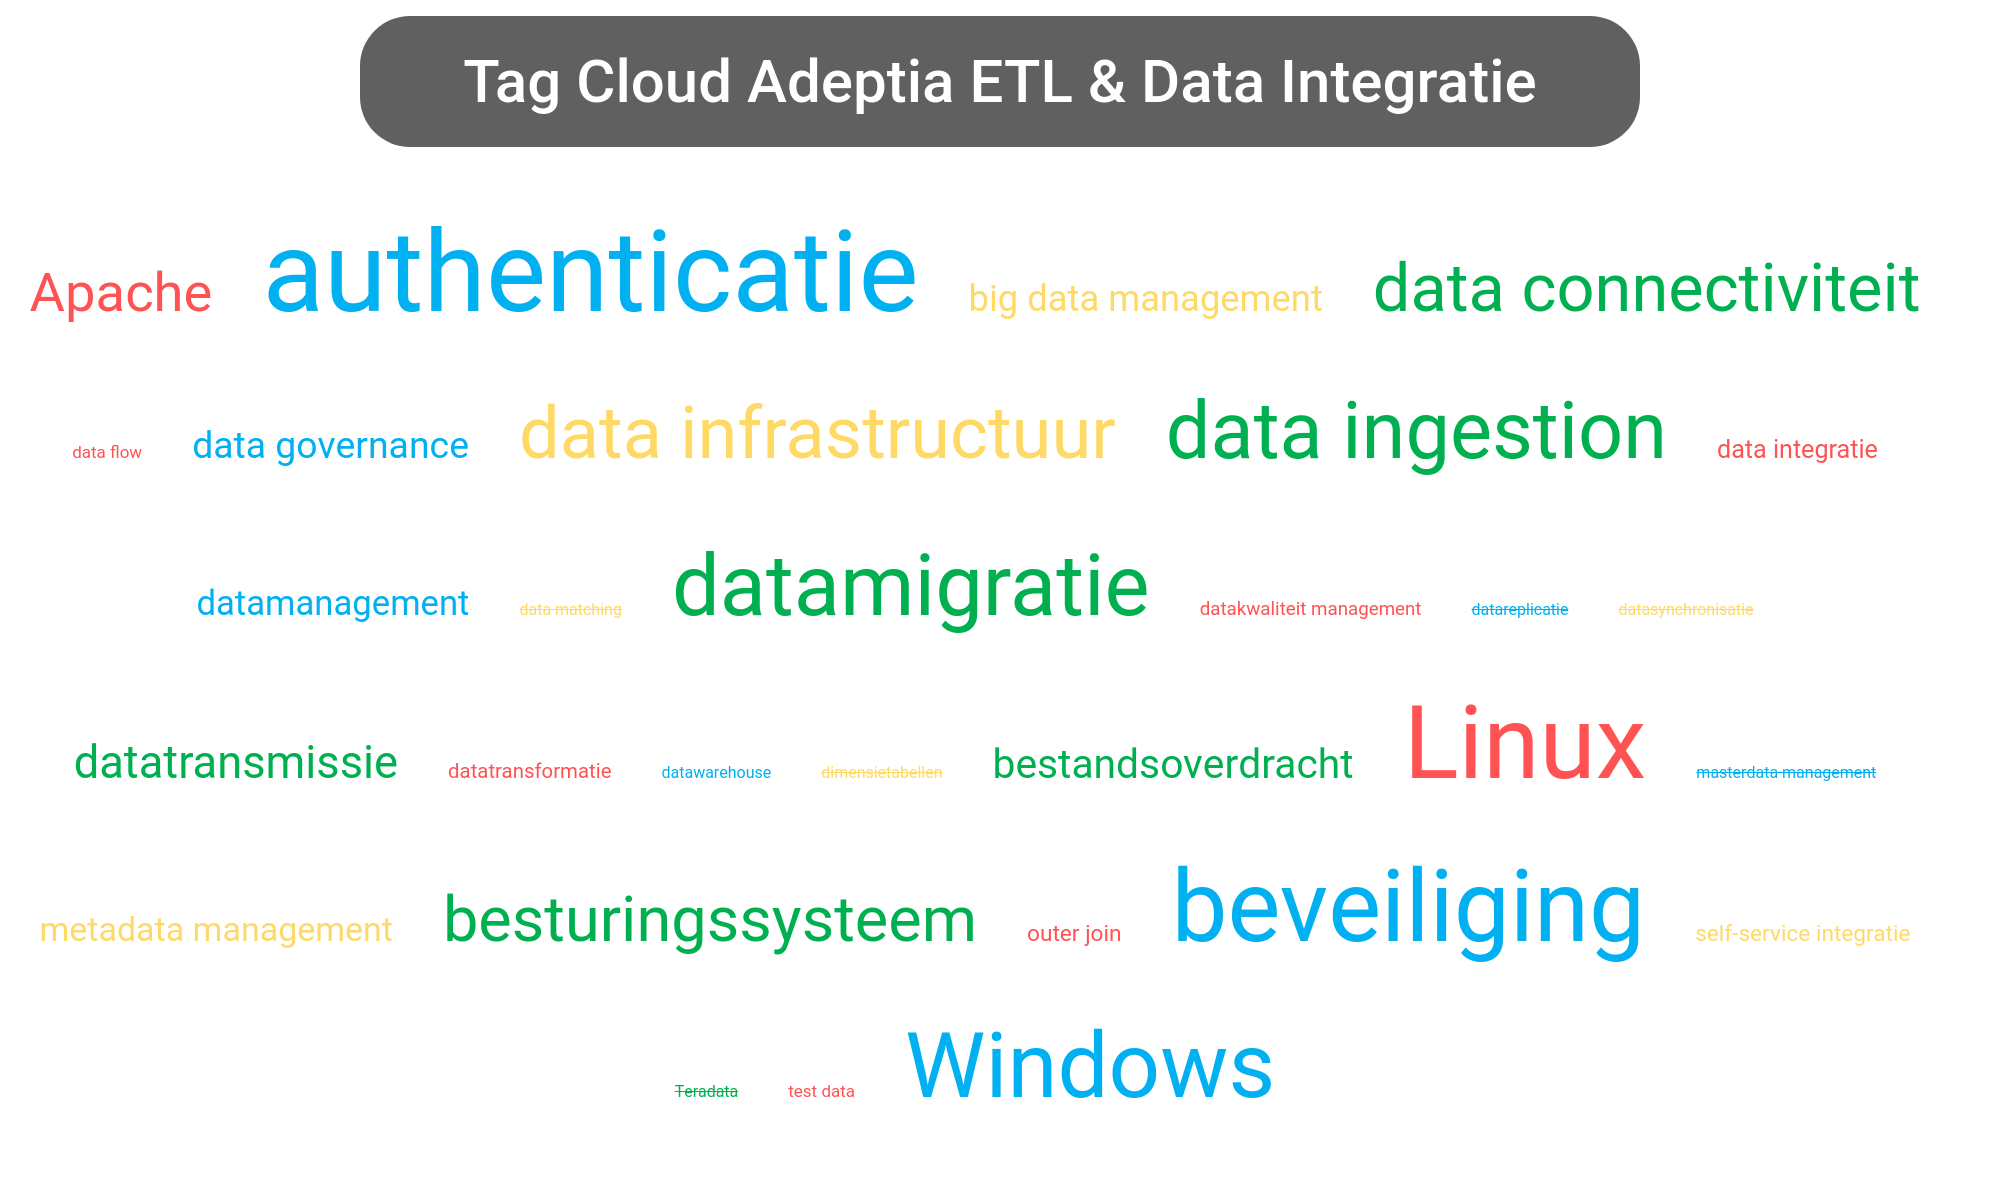 Tag cloud van Adeptia Integration tools.